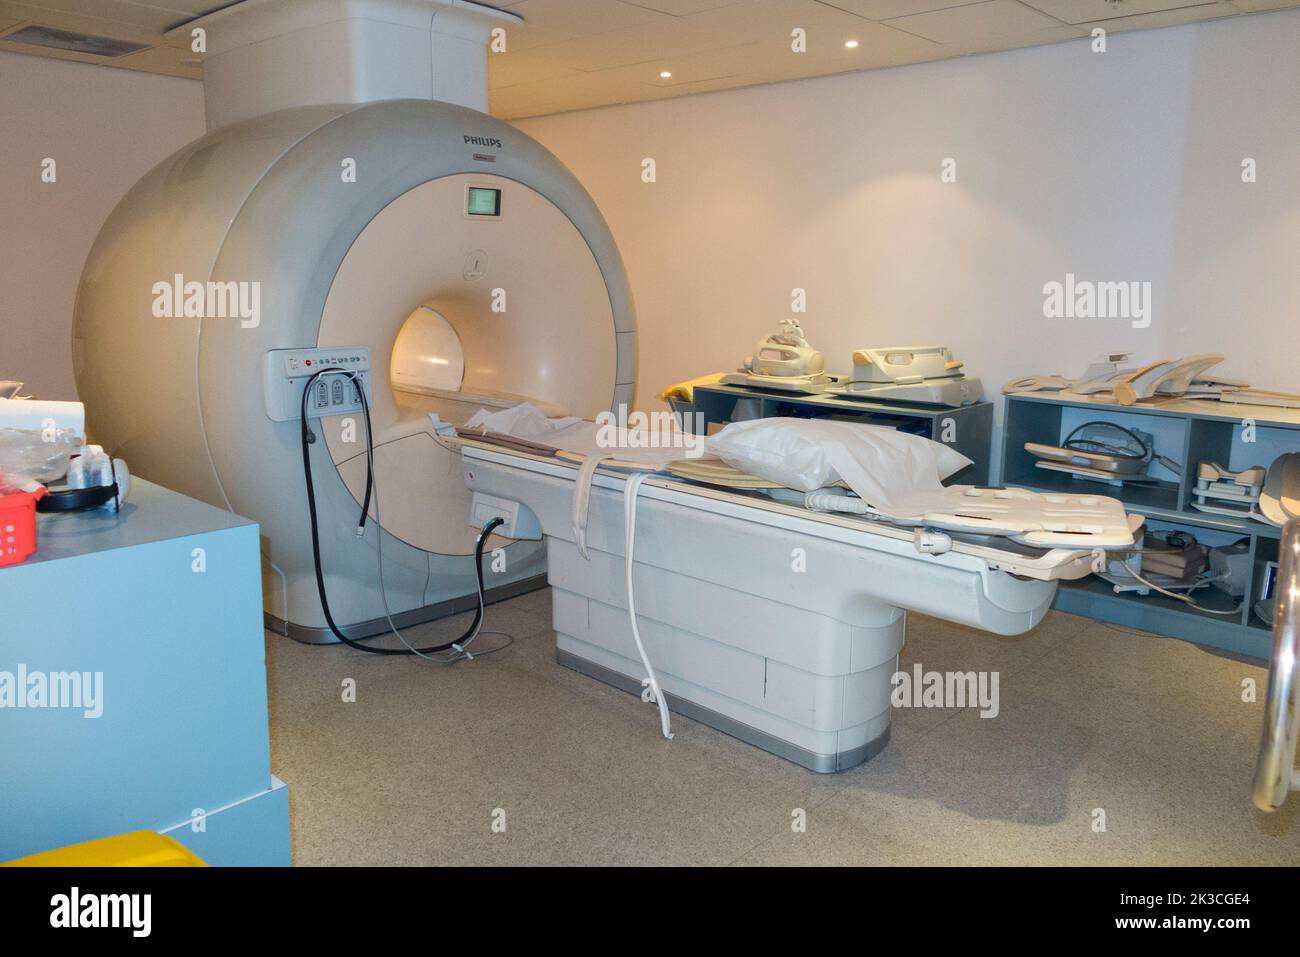 Ein MRT-Scanner (vermutlich ein Philips Achieva MRT-Gerät) ist ein Ganzkörper-MRT-Gerät zum Scannen von Patienten in einem Krankenhaus, das für private und NHS-Patienten verwendet wird. Stockfoto